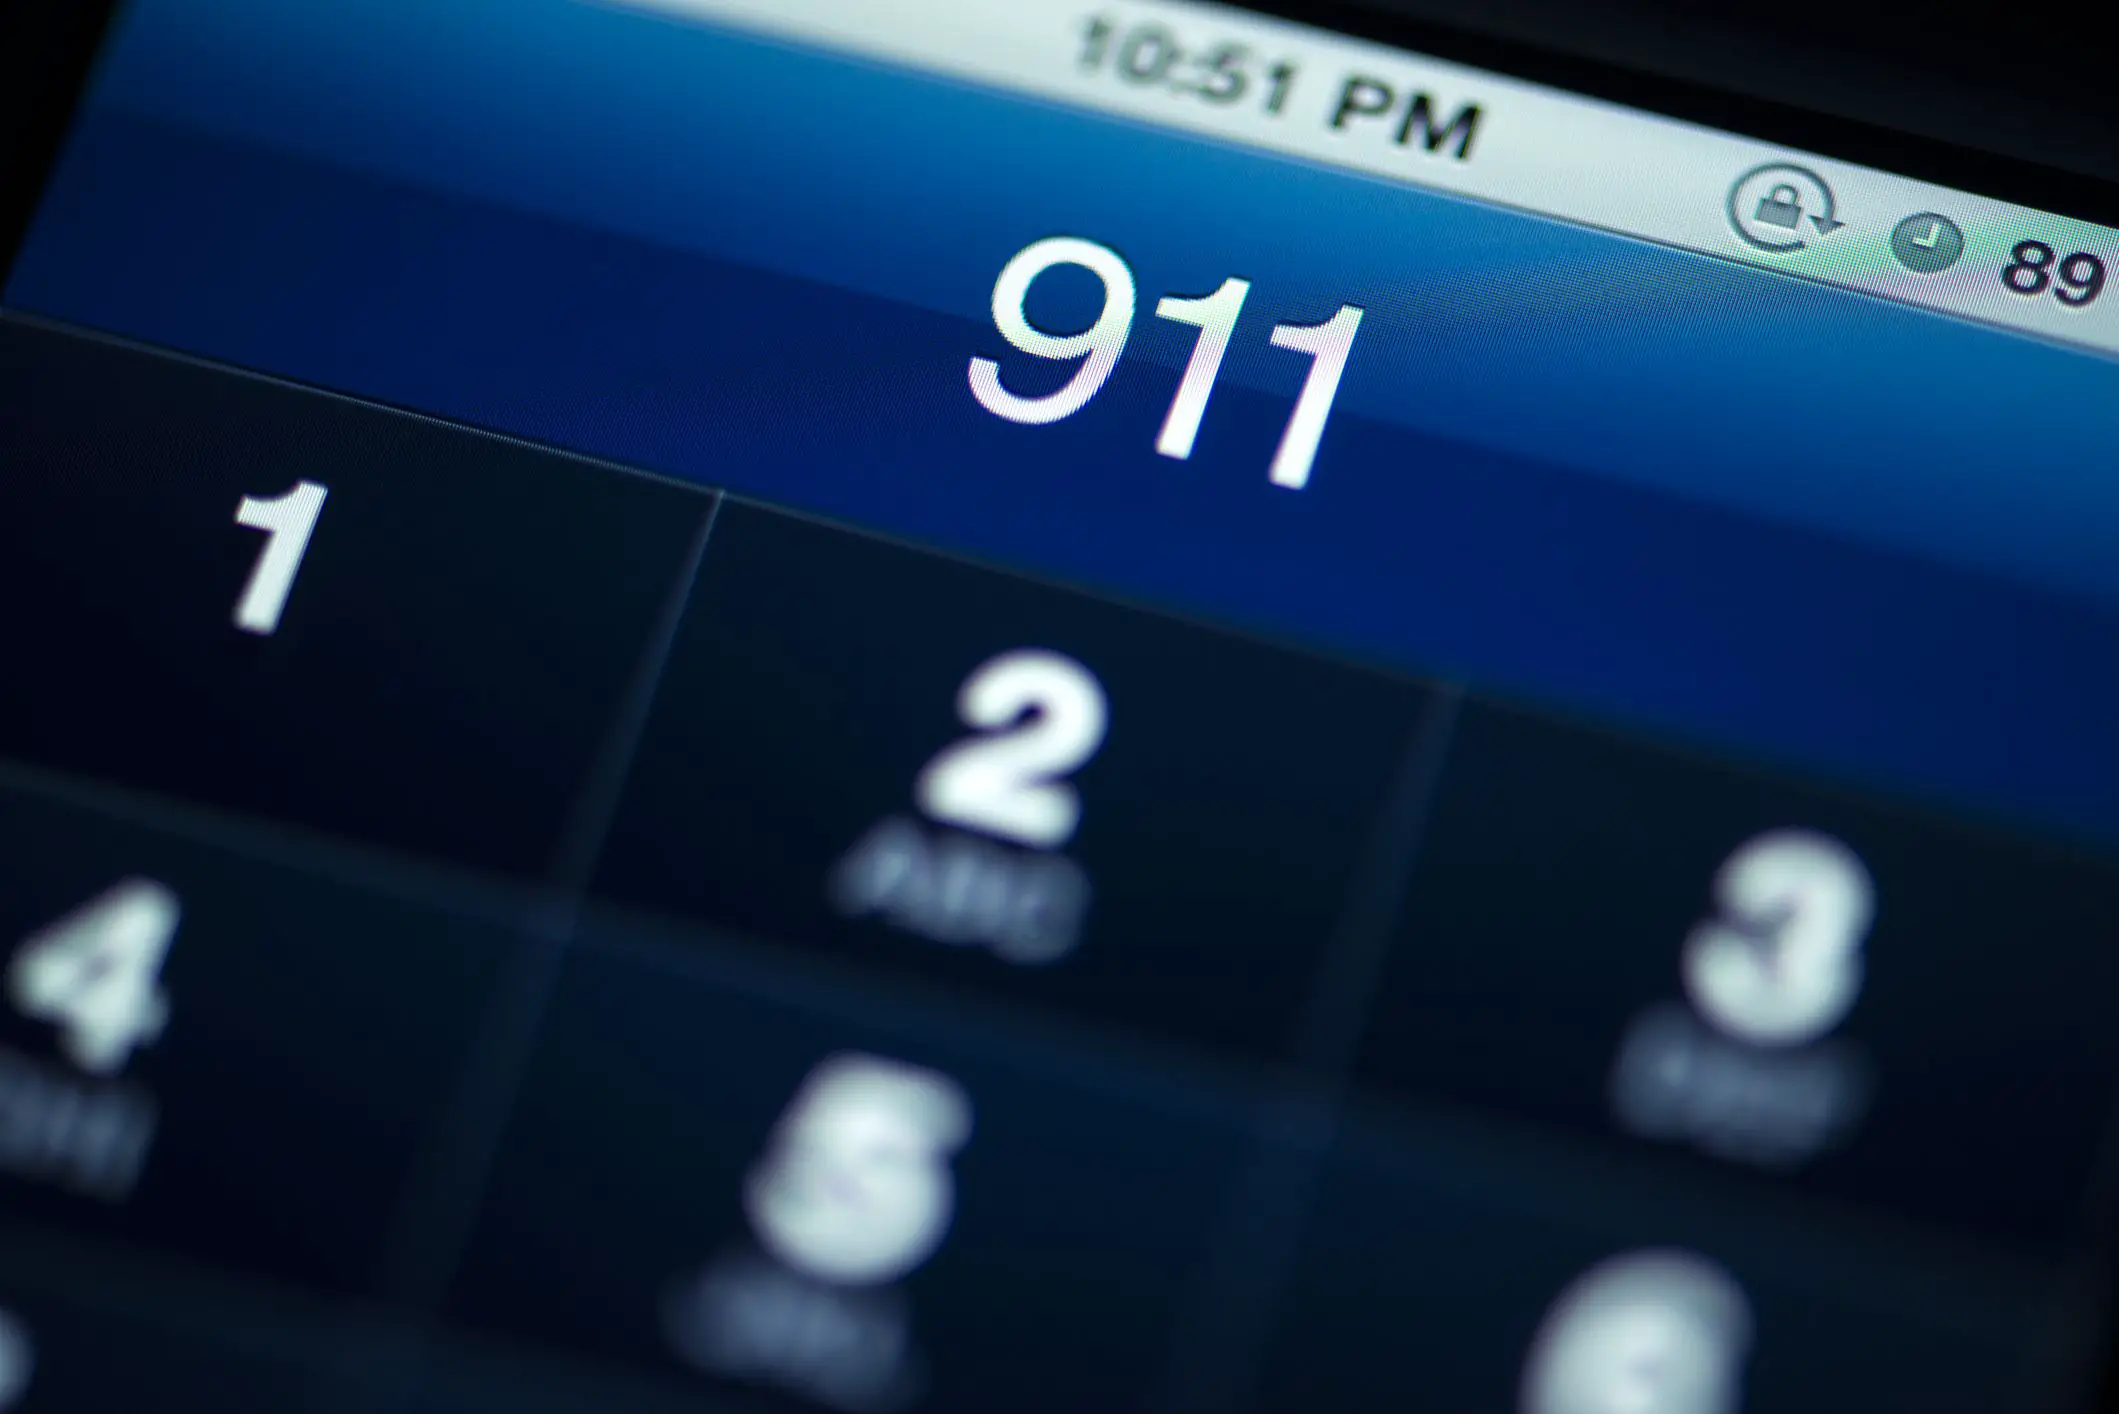 Uma tela de telefone celular exibe 911